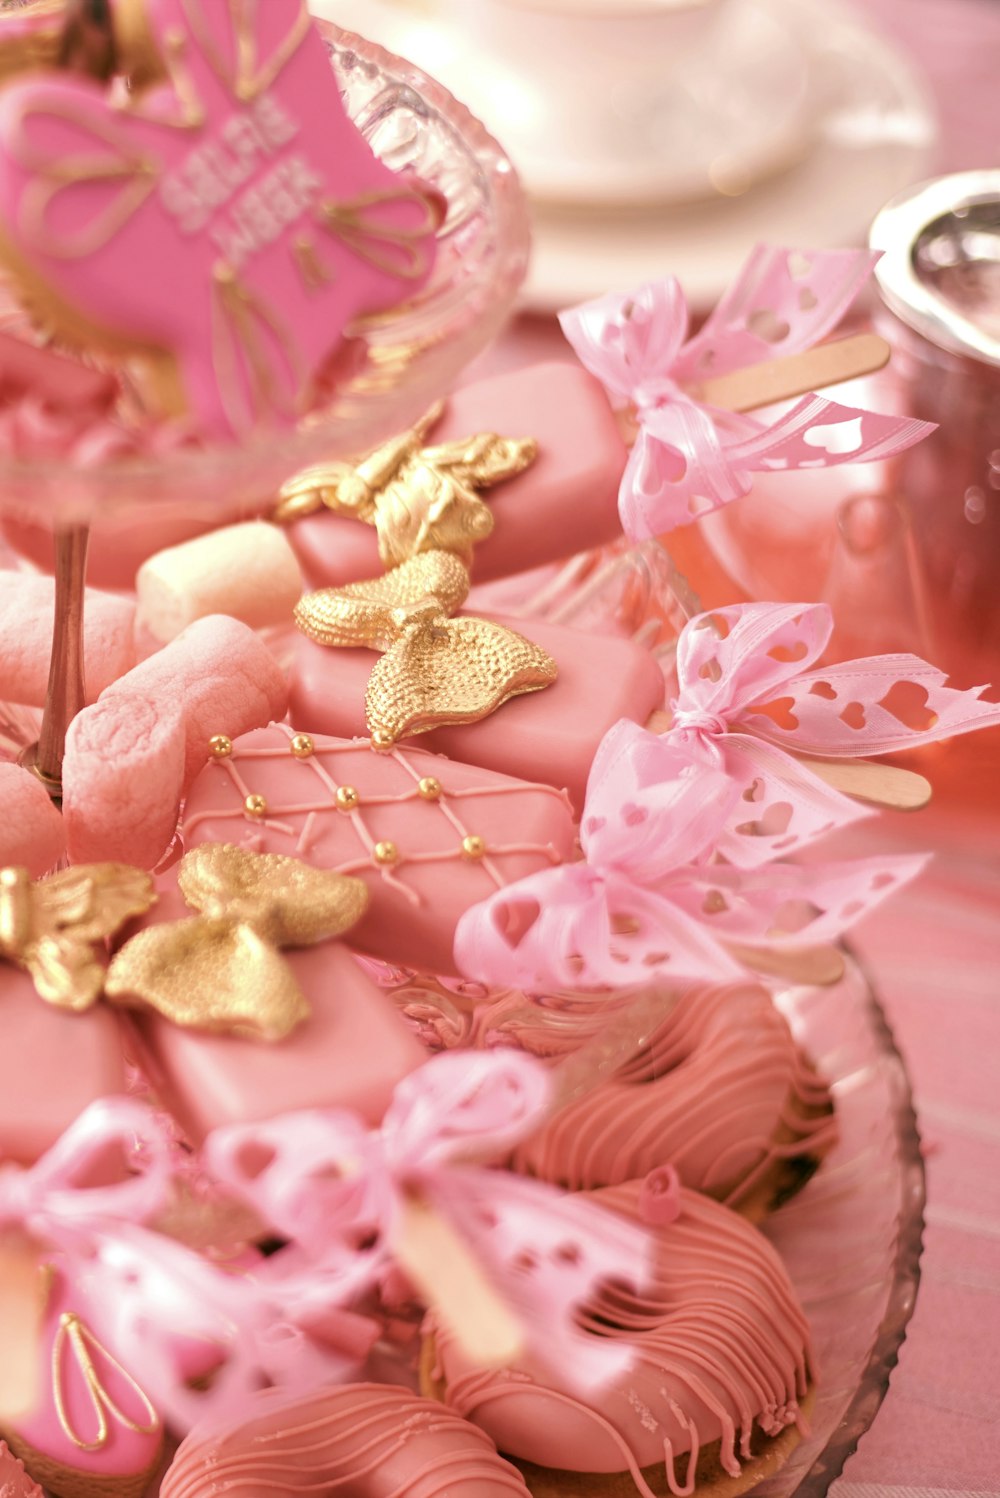 테이블에 분홍색과 금색으로 장식된 케이크